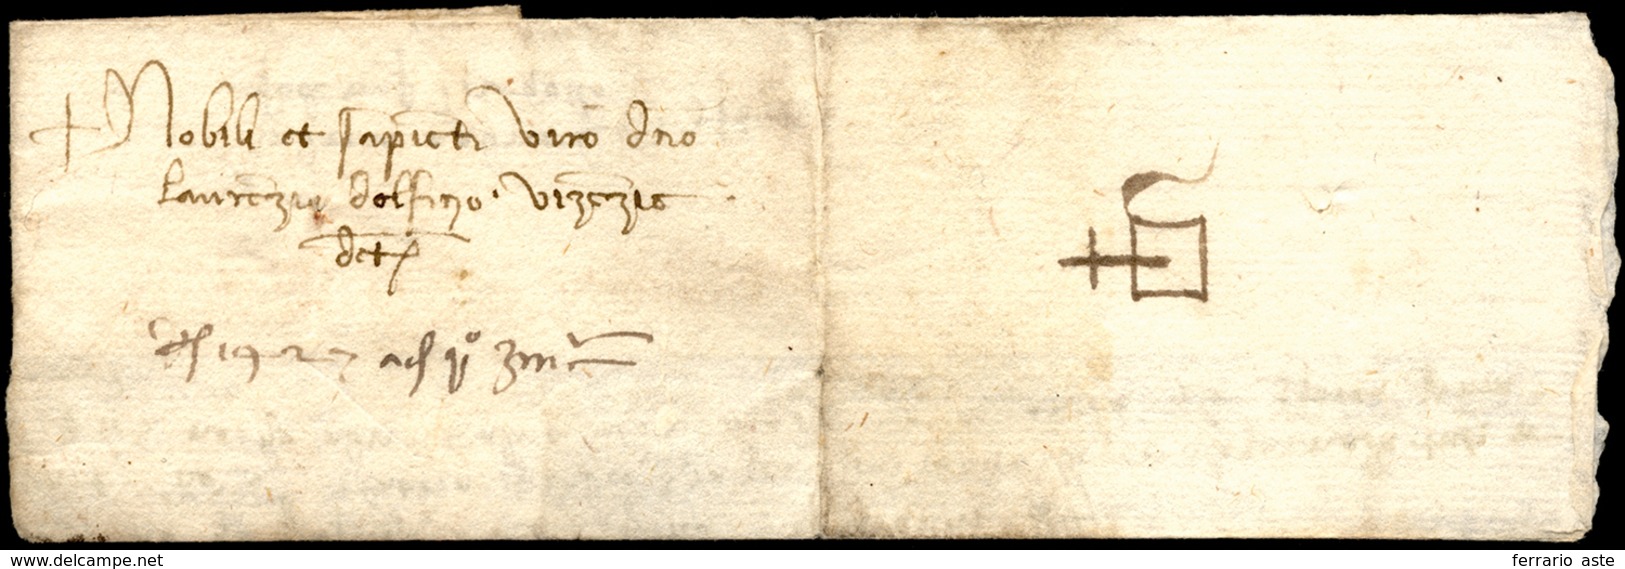 1450 Ca. - Lettera Completa Di Testo Per Venezia, Gilda Al Verso. ... - ...-1850 Préphilatélie